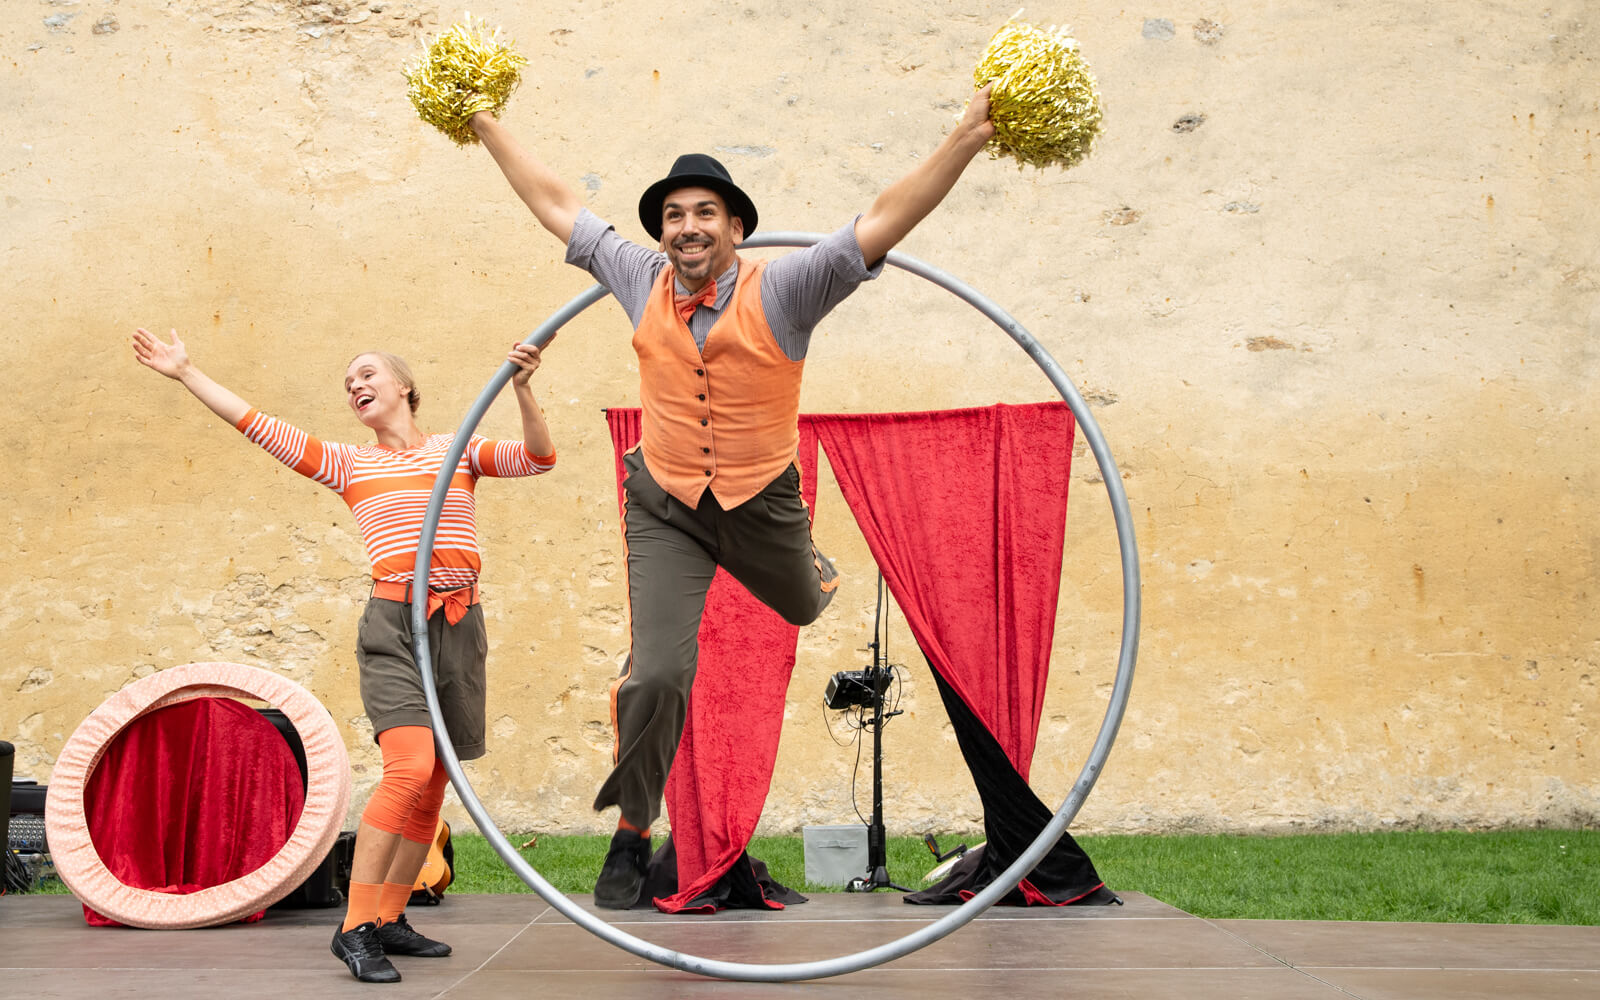 Artistes de cirque : femme levant les bras, homme dans une roue Cyr avec pompons dorés.